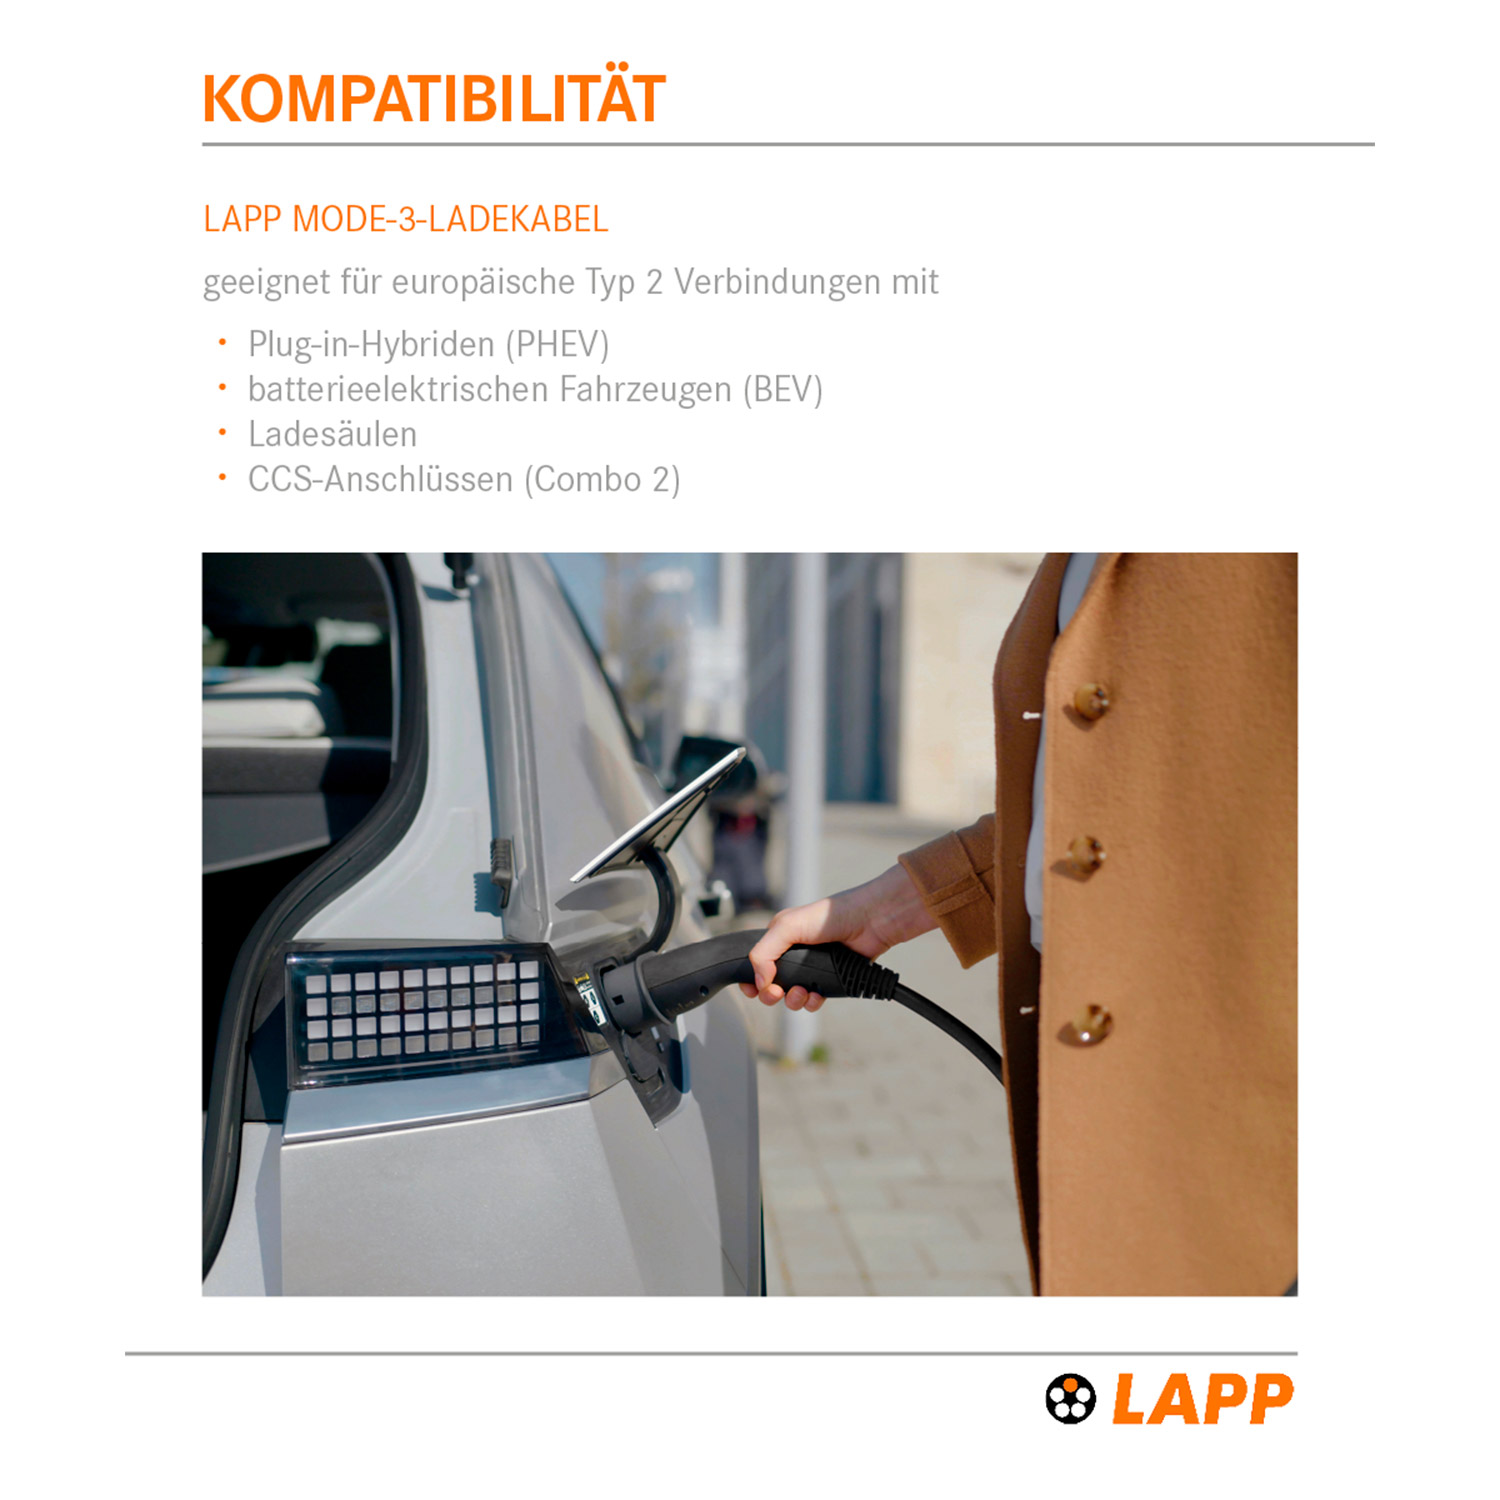 Kabellänge: LAPP Ladekabel Elektrofahrzeuge, kW, 10 m für 22 64691 MOBILITY